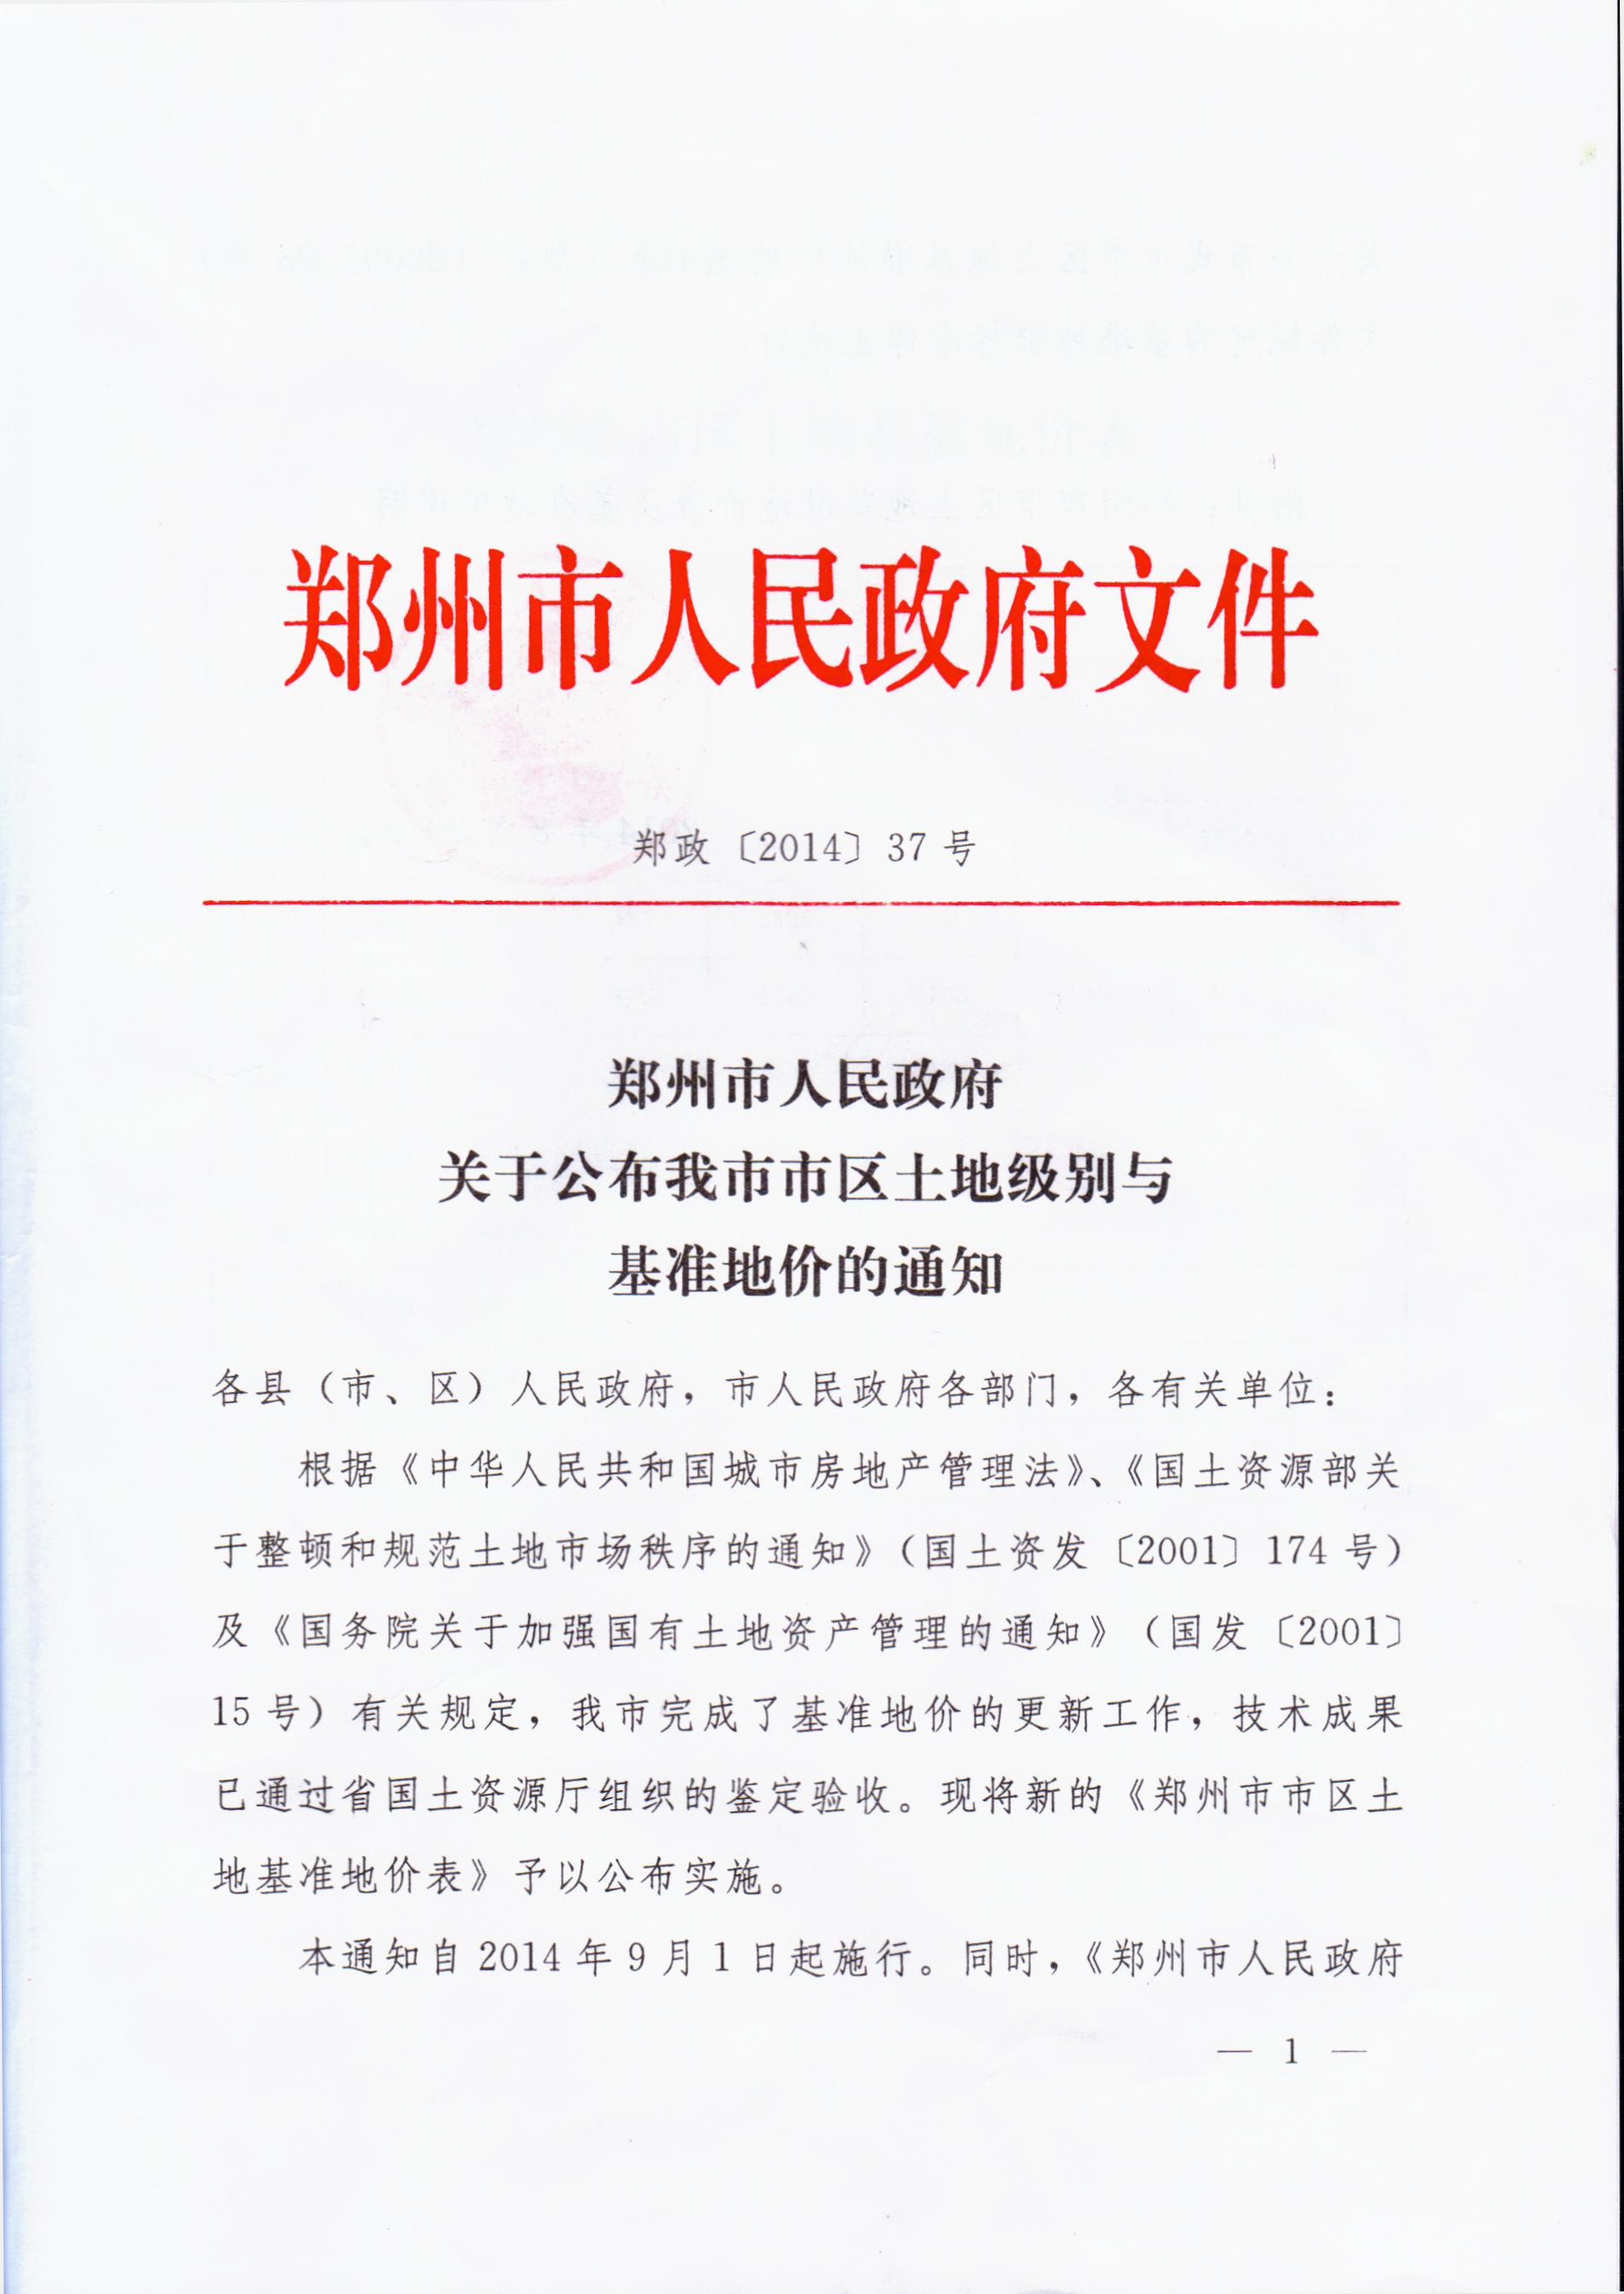 郑州市人民政府关于公布我市市区土地级别与基准地价的通知